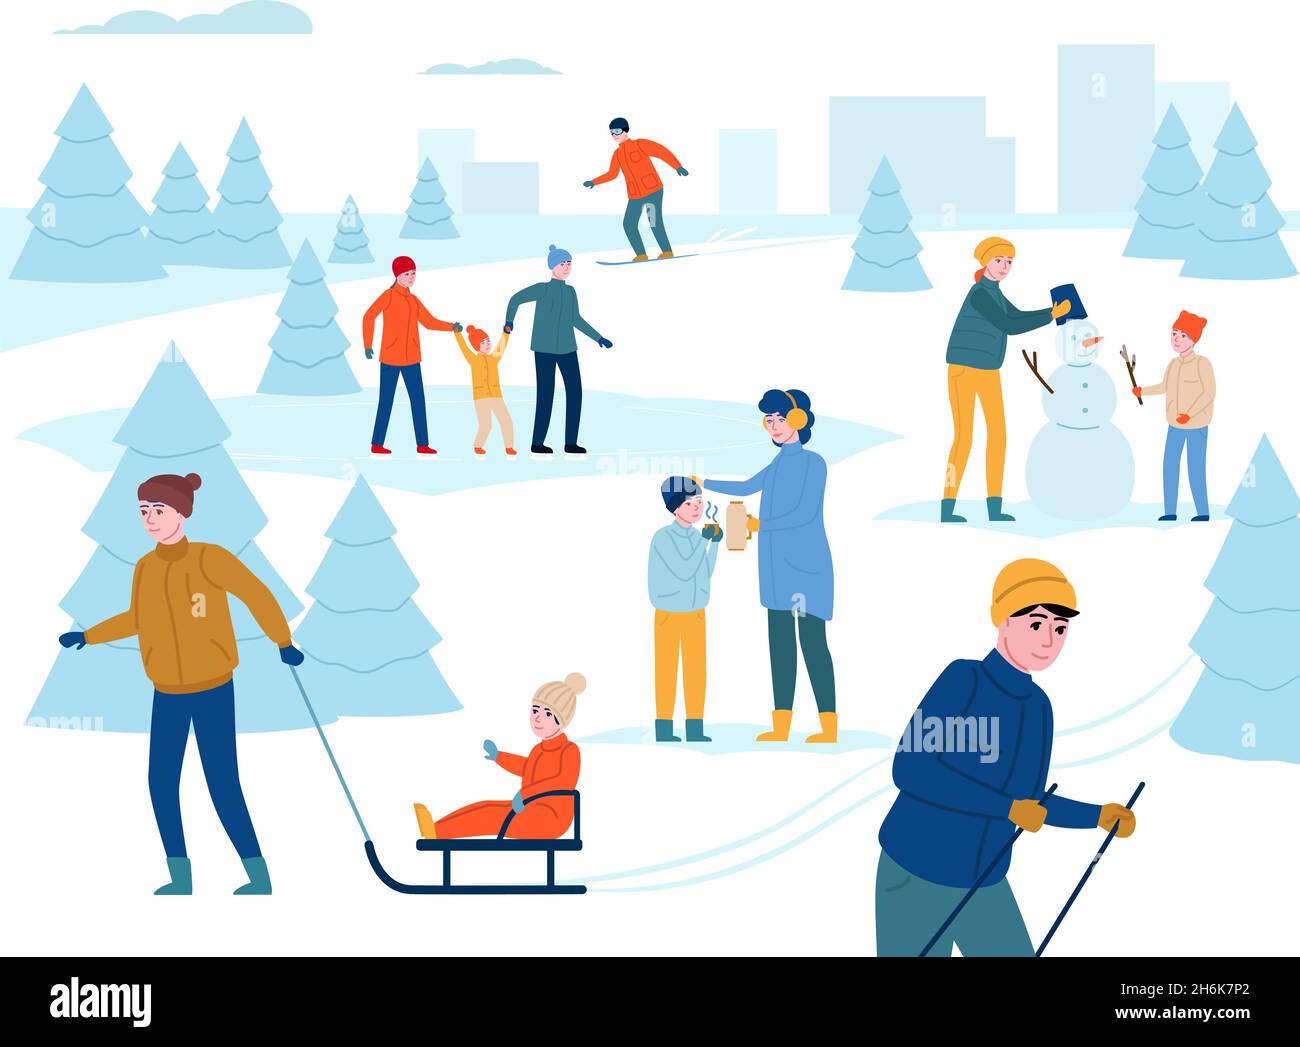 En hiver, activités de plein air.Les parents heureux avec les enfants marchent, s'amusent dans le parc de la ville de neige, les gens font du ski, font du bonhomme de neige.Arrière-plan vectoriel Illustration de Vecteur